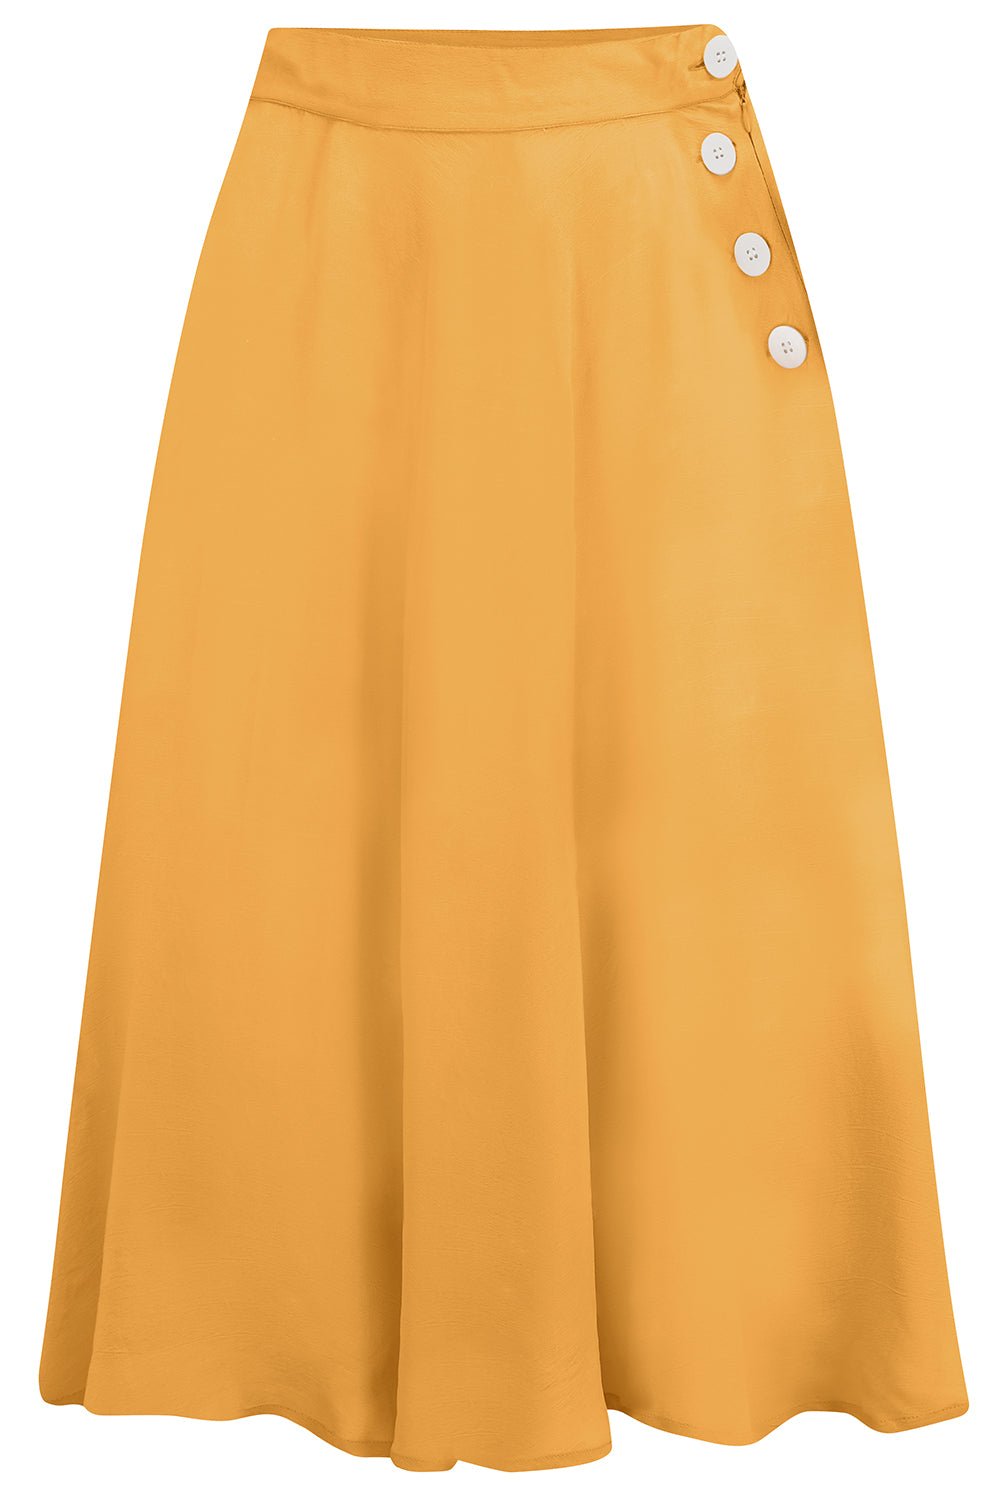 Jupe « Isabelle » en moutarde, style classique et authentique d’inspiration vintage des années 1940